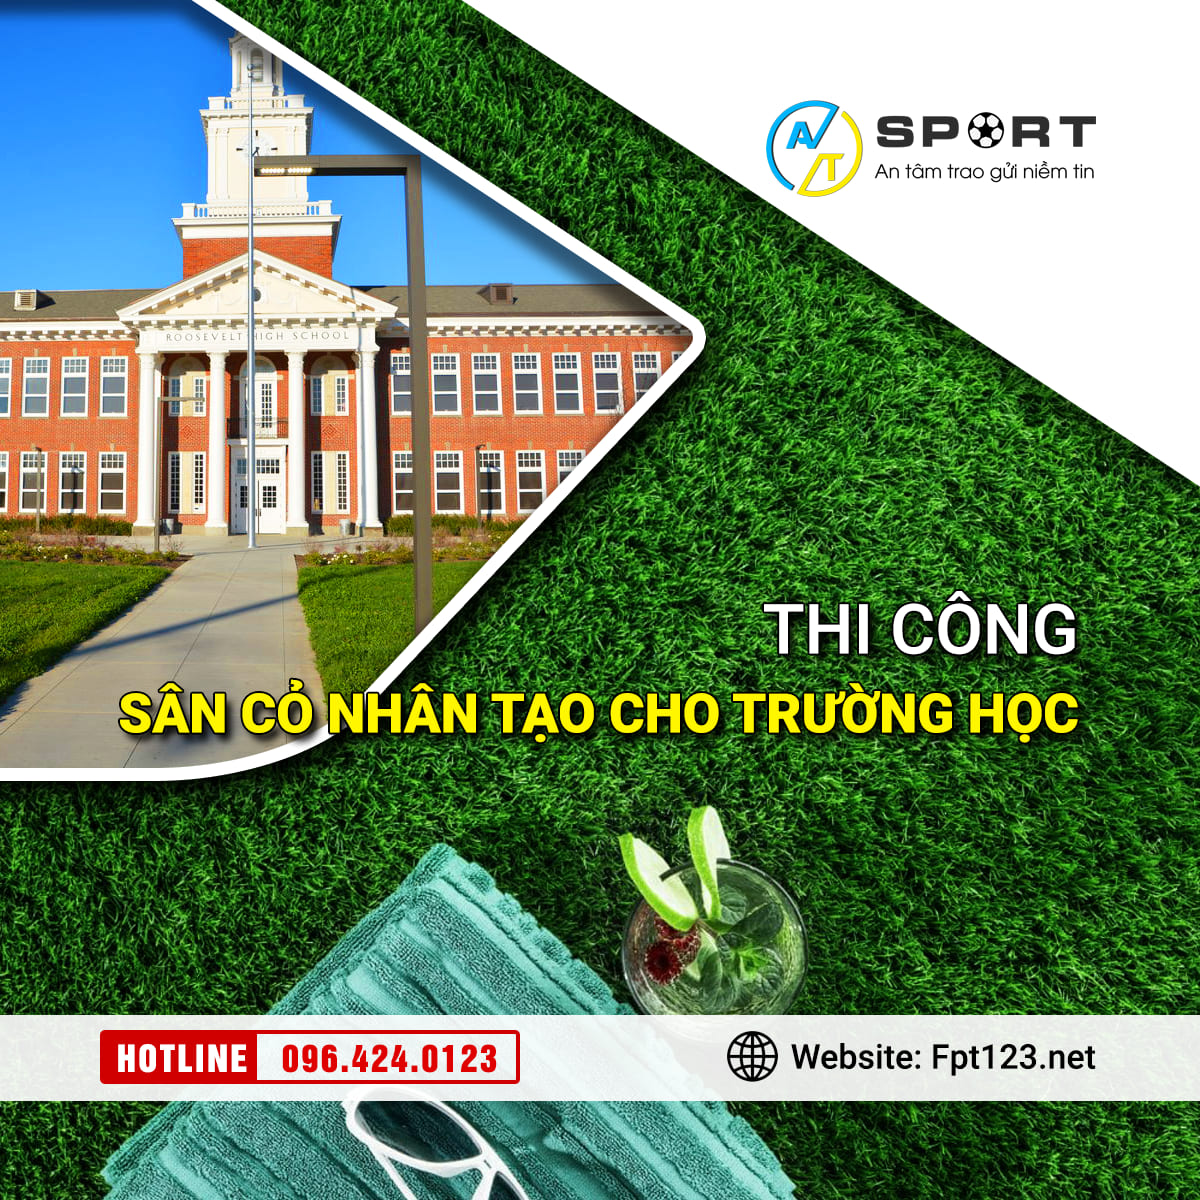 Thi công cỏ nhân tạo sân bóng cho trường học ở Quảng Nam